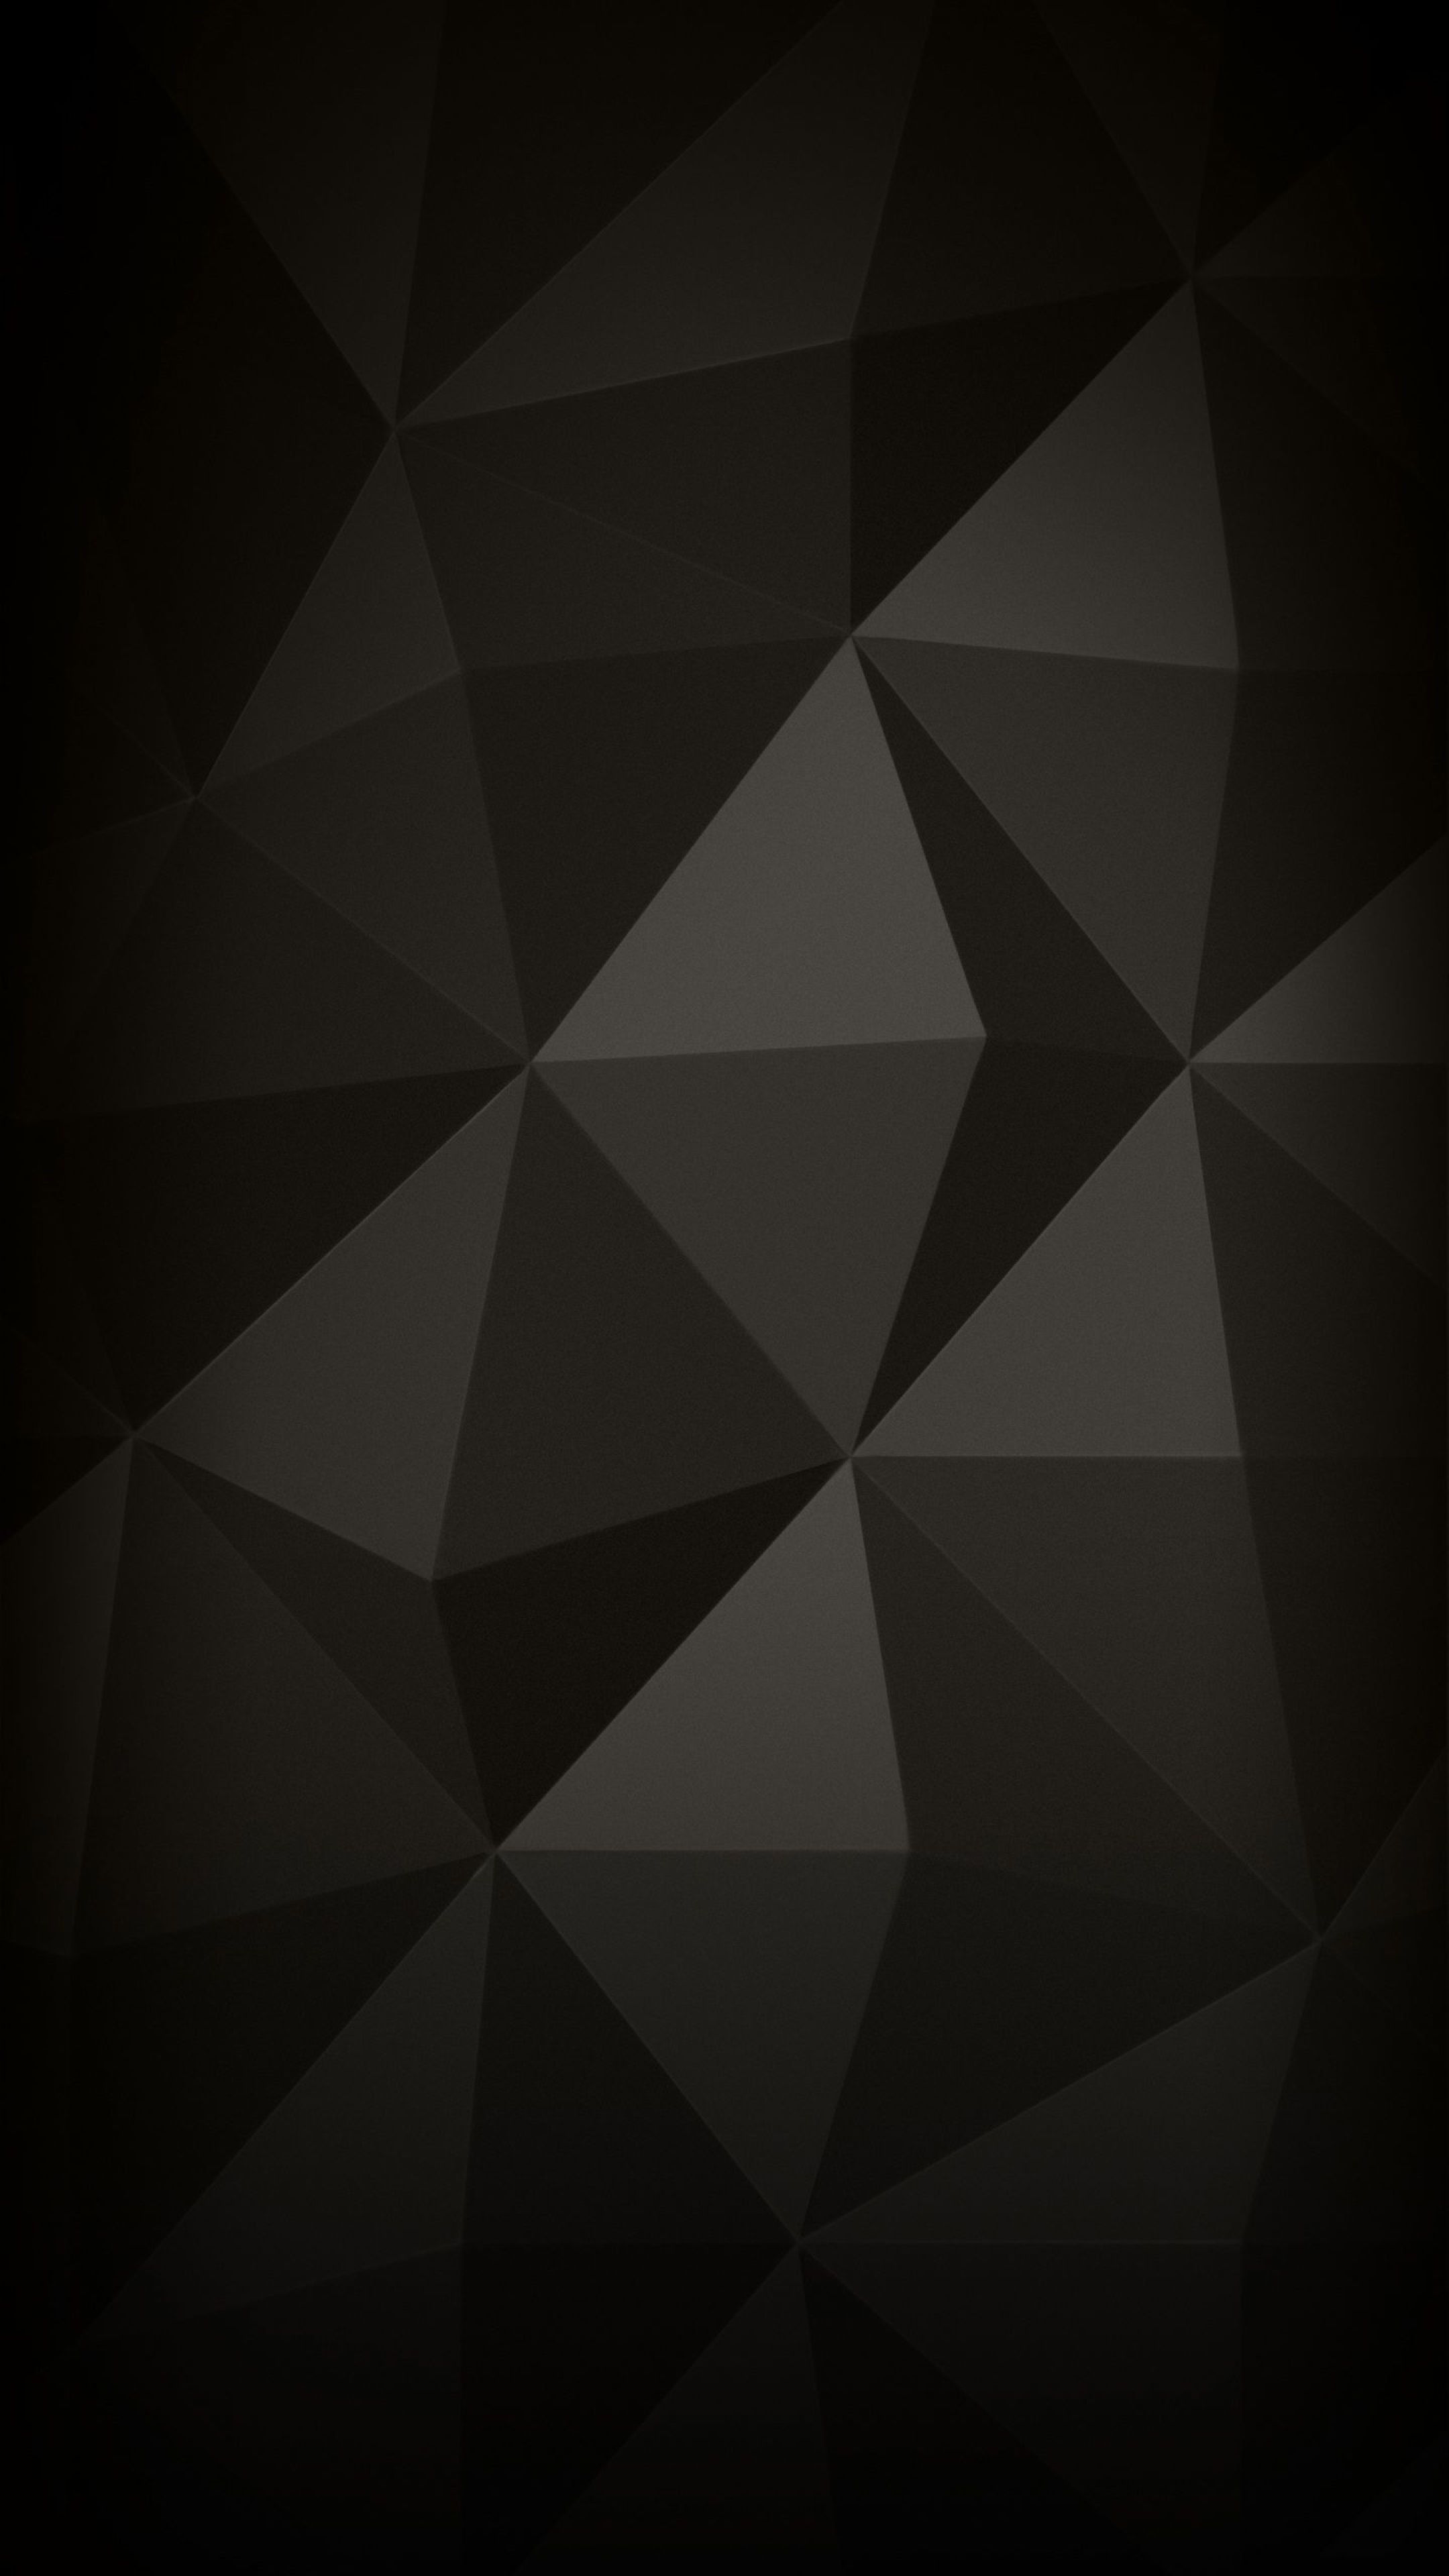 Black Wallpaper For Mobile 4k